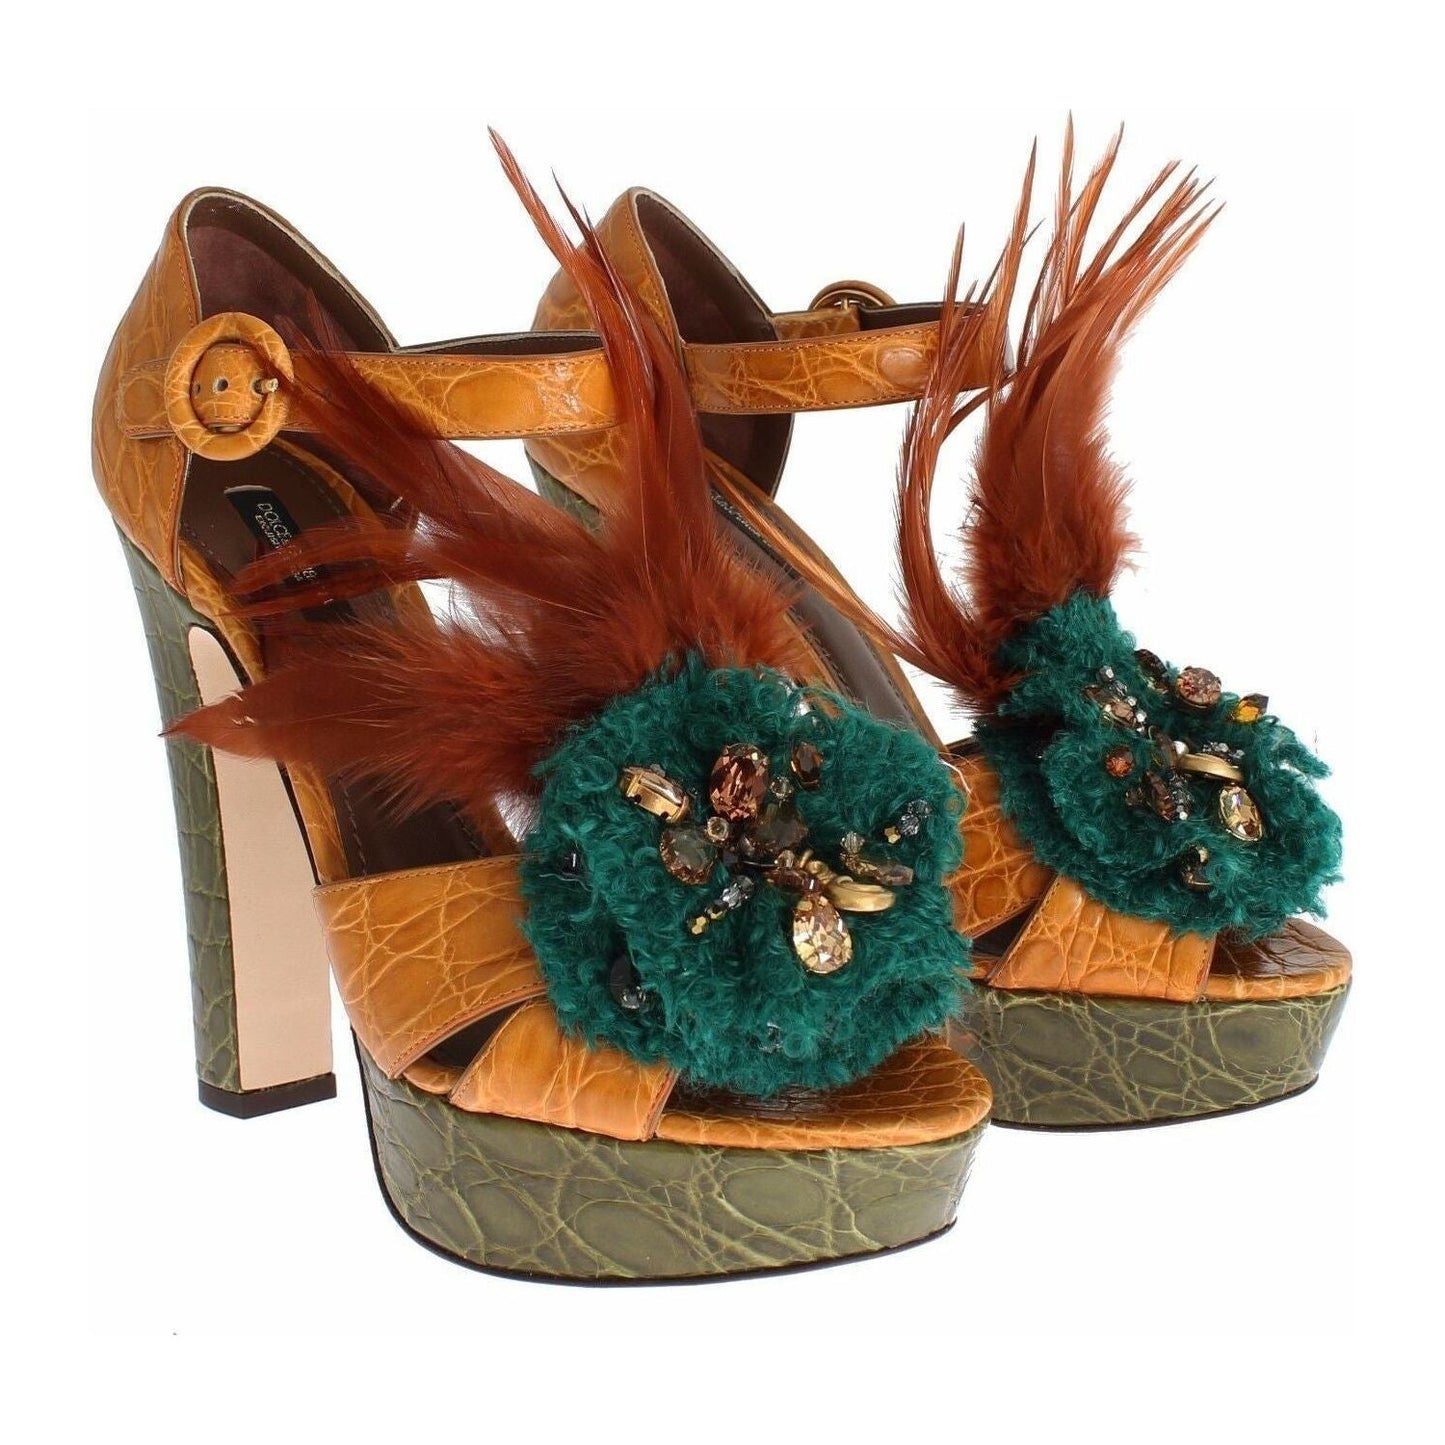 Dolce & Gabbana Multicolor Crystal Ankle Strap Platform Sandals orange-leather-crystal-platform-sandal-shoes s-l1600-88-5120b66b-6f8.jpg